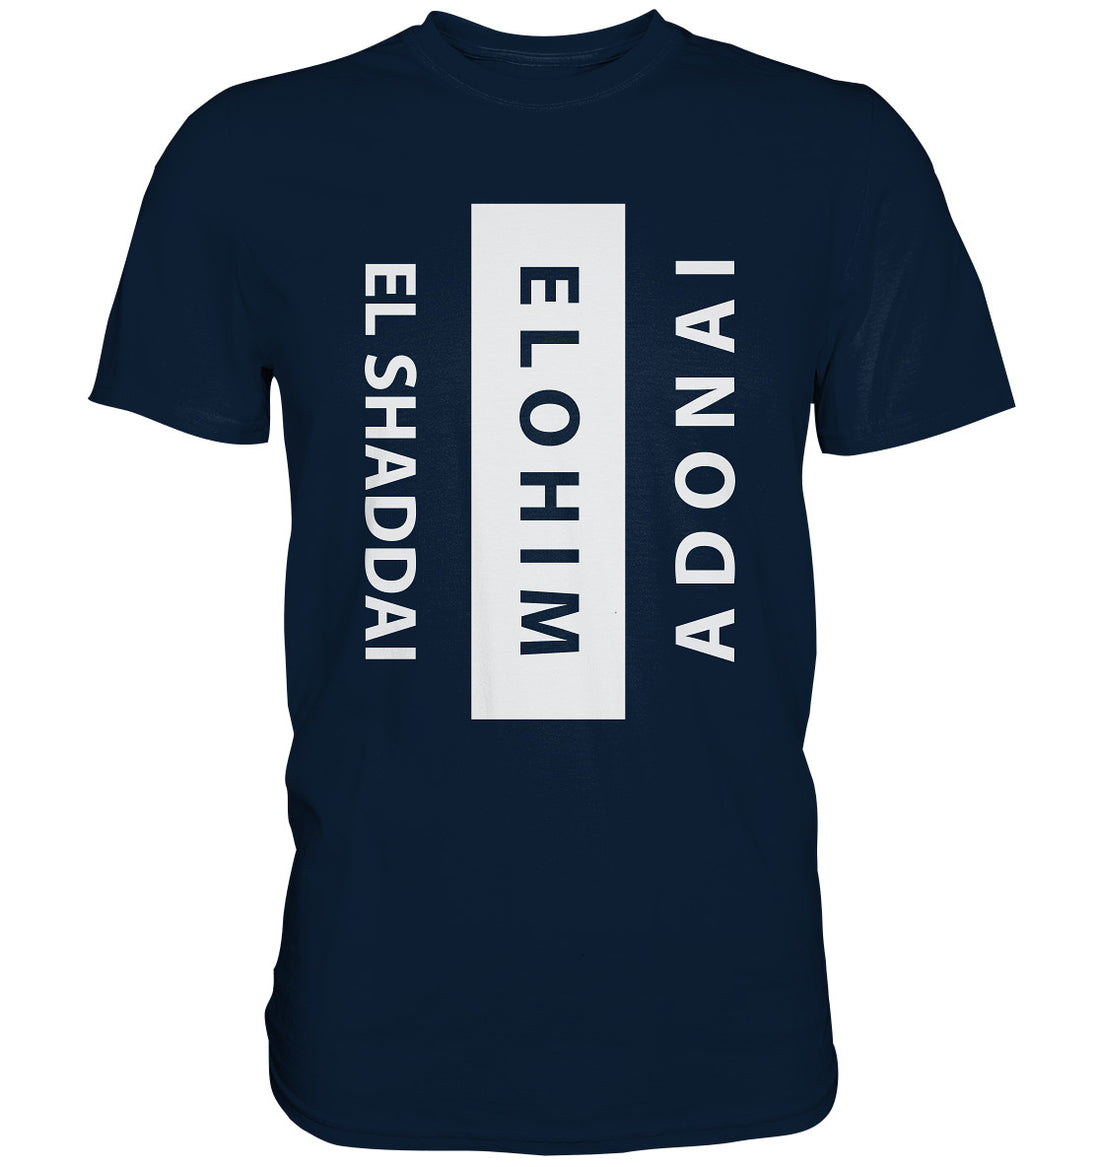 El Shaddai, Elohim, Adonai - Premium Shirt